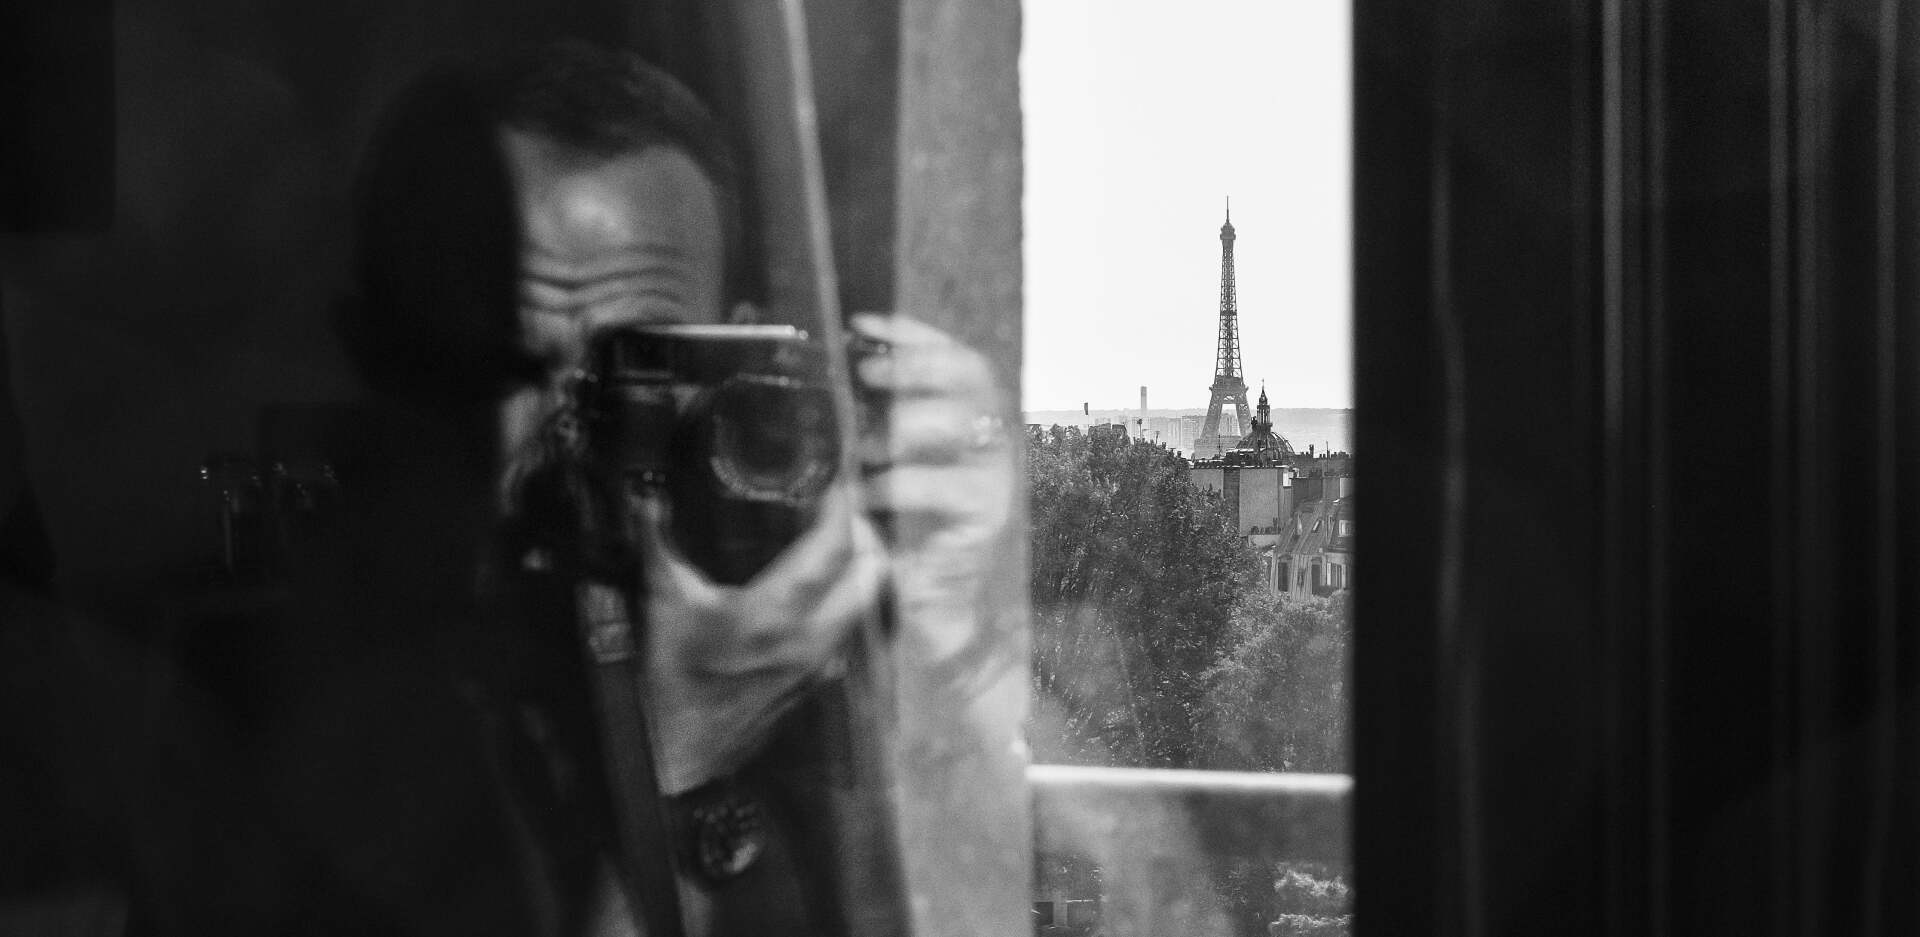 Ο Νίκος Αλιάγας στέλνει γράμμα και φωτογραφίες από το Παρίσι 